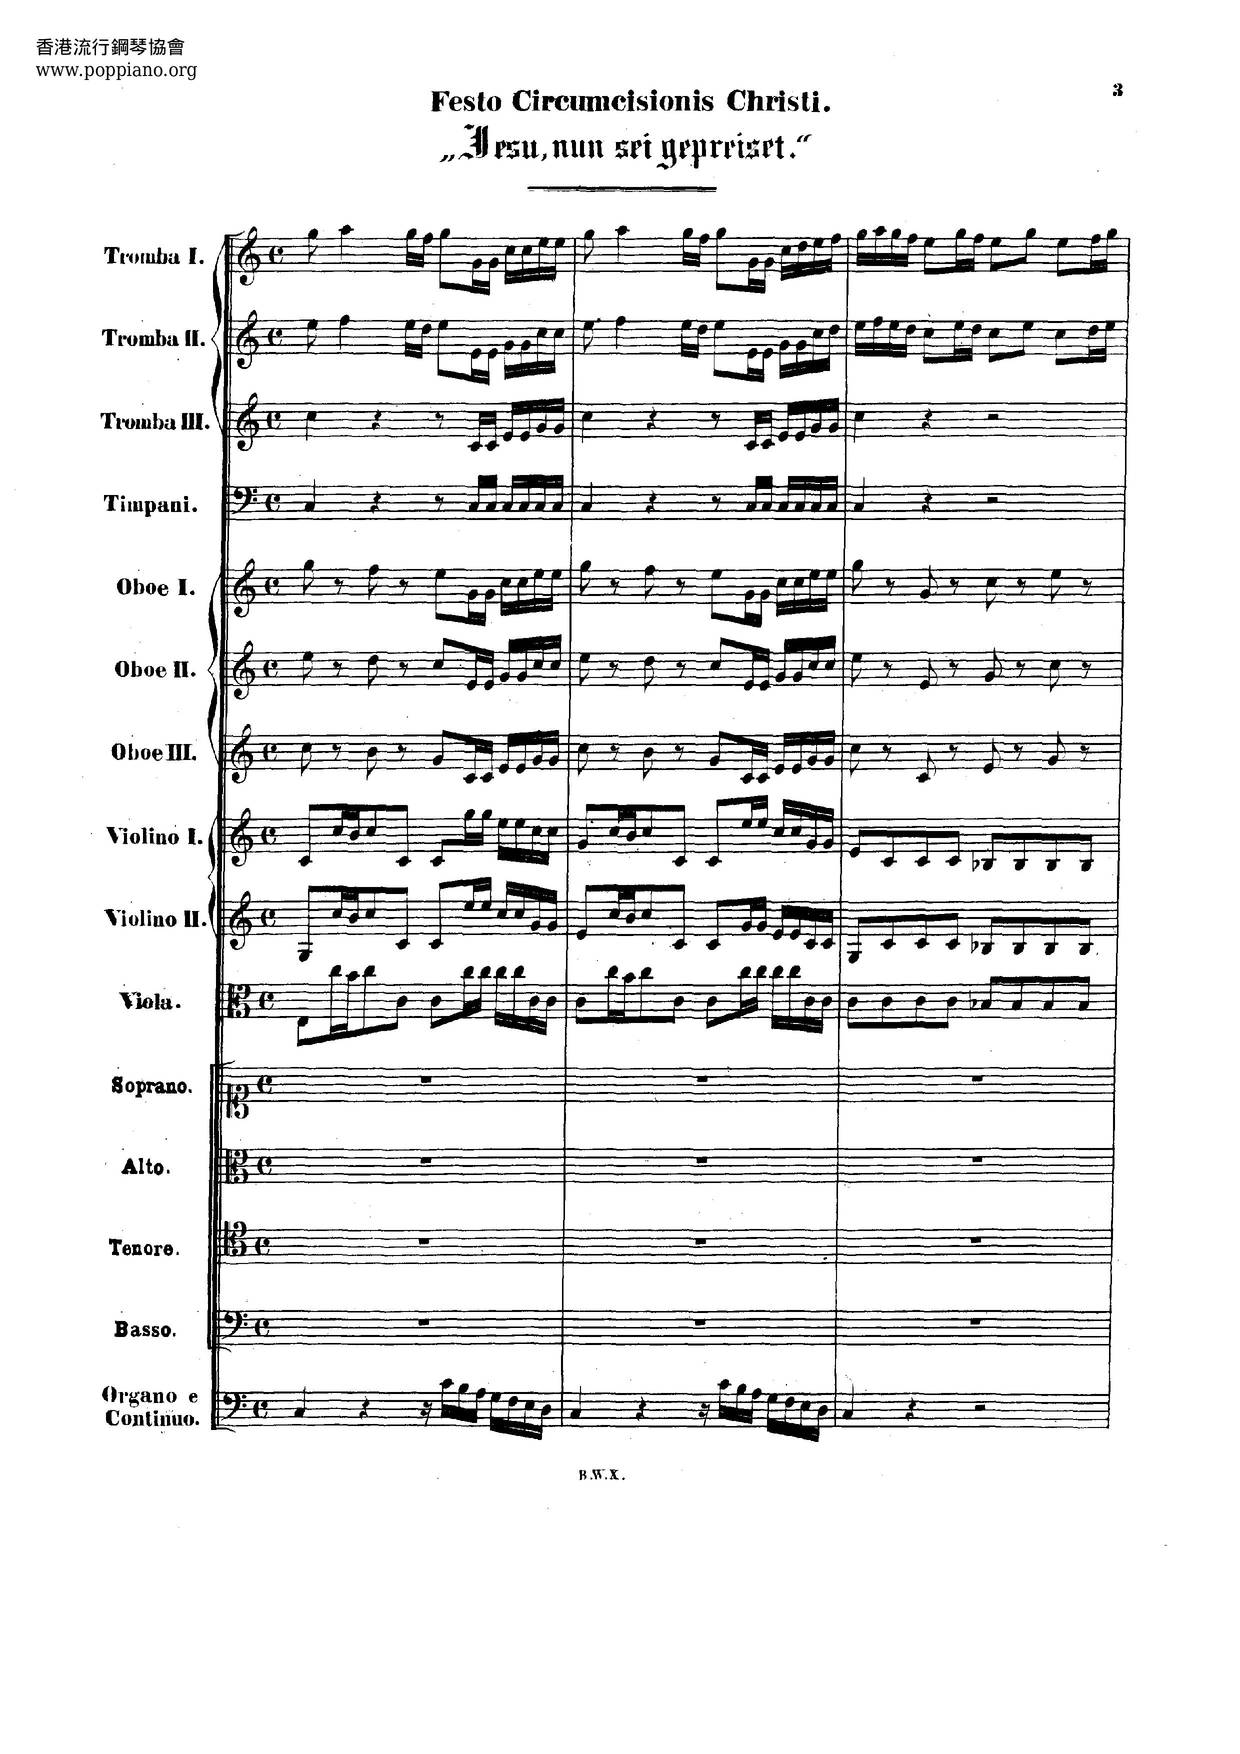 Jesu, Nun Sei Gepreiset, BWV 41 Score